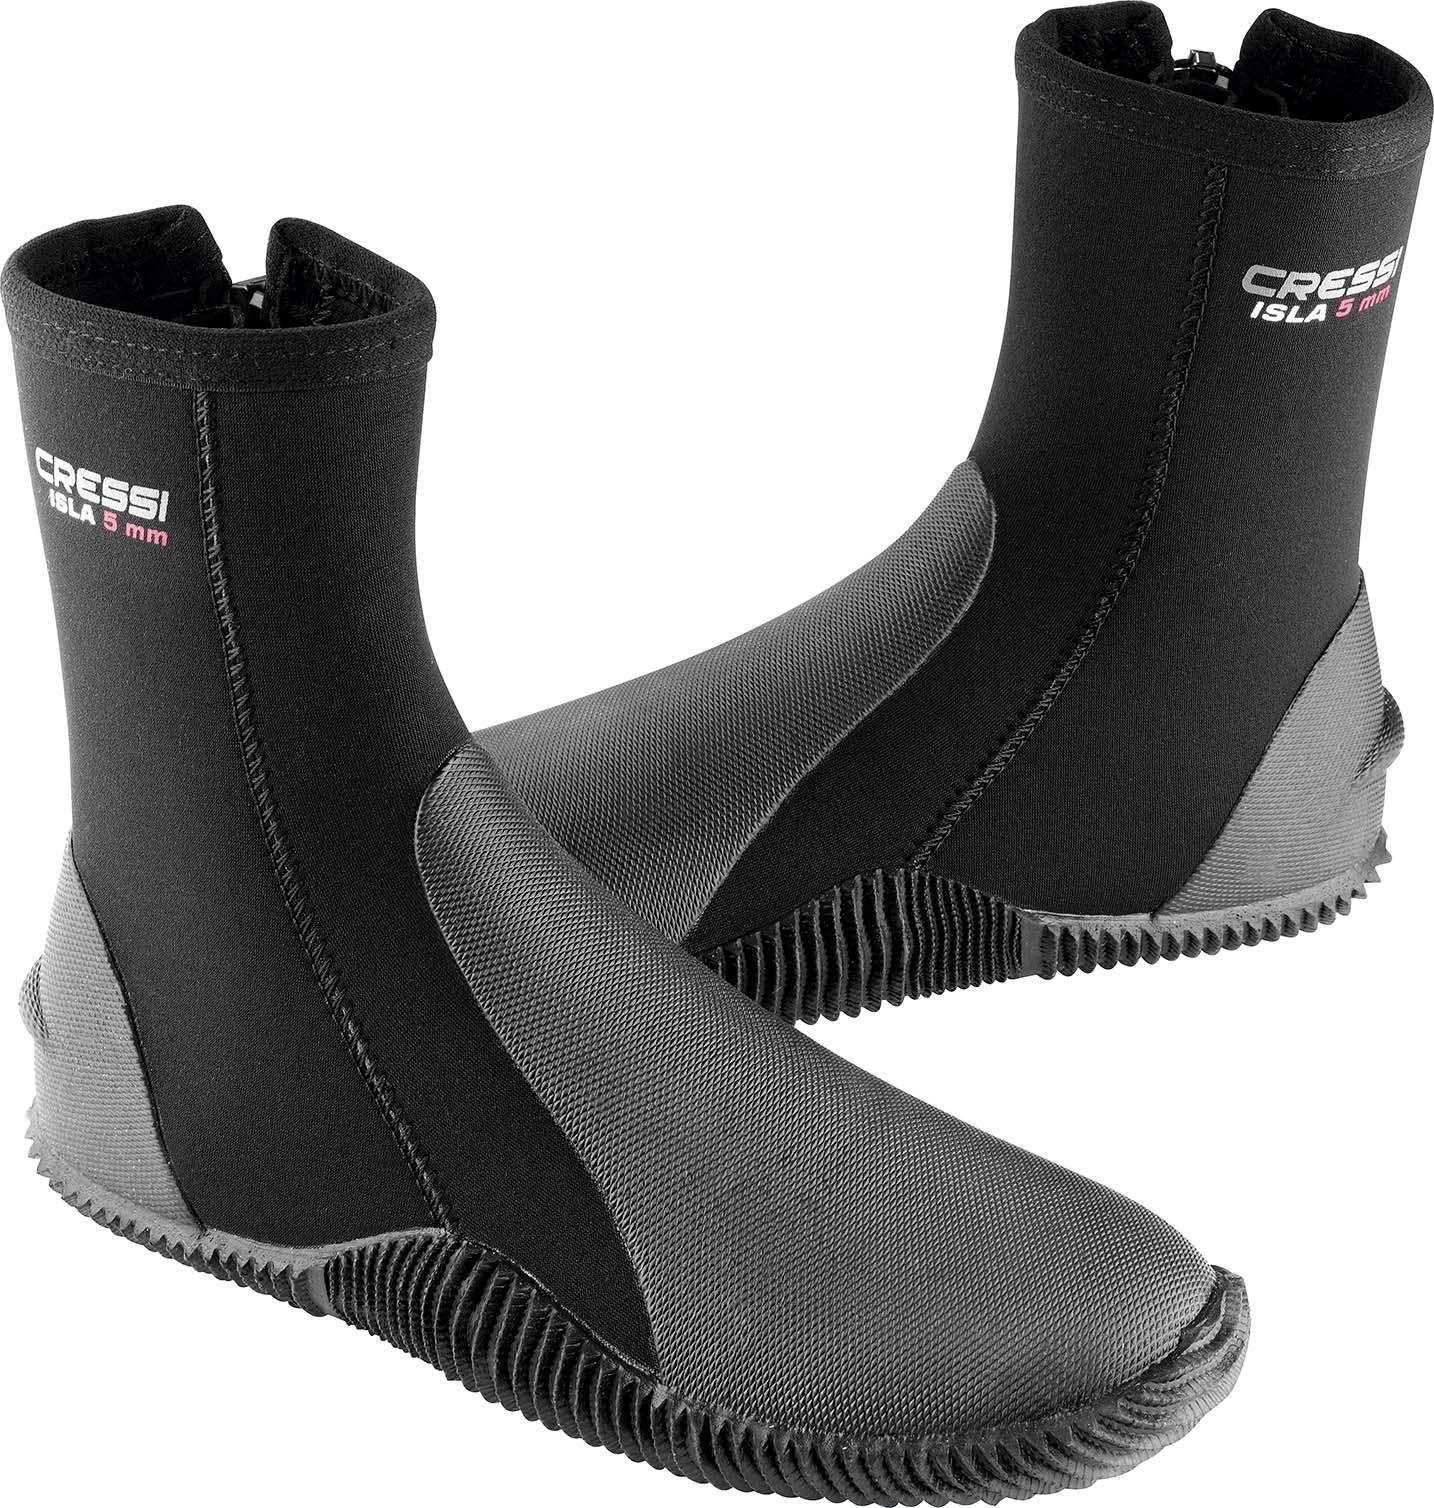 รองเท้า รองเท้าสำหรับนักดำน้ำ อุปกรณ์ดำน้ำ CRESSI ISLA DIVE BOOTS 5mm